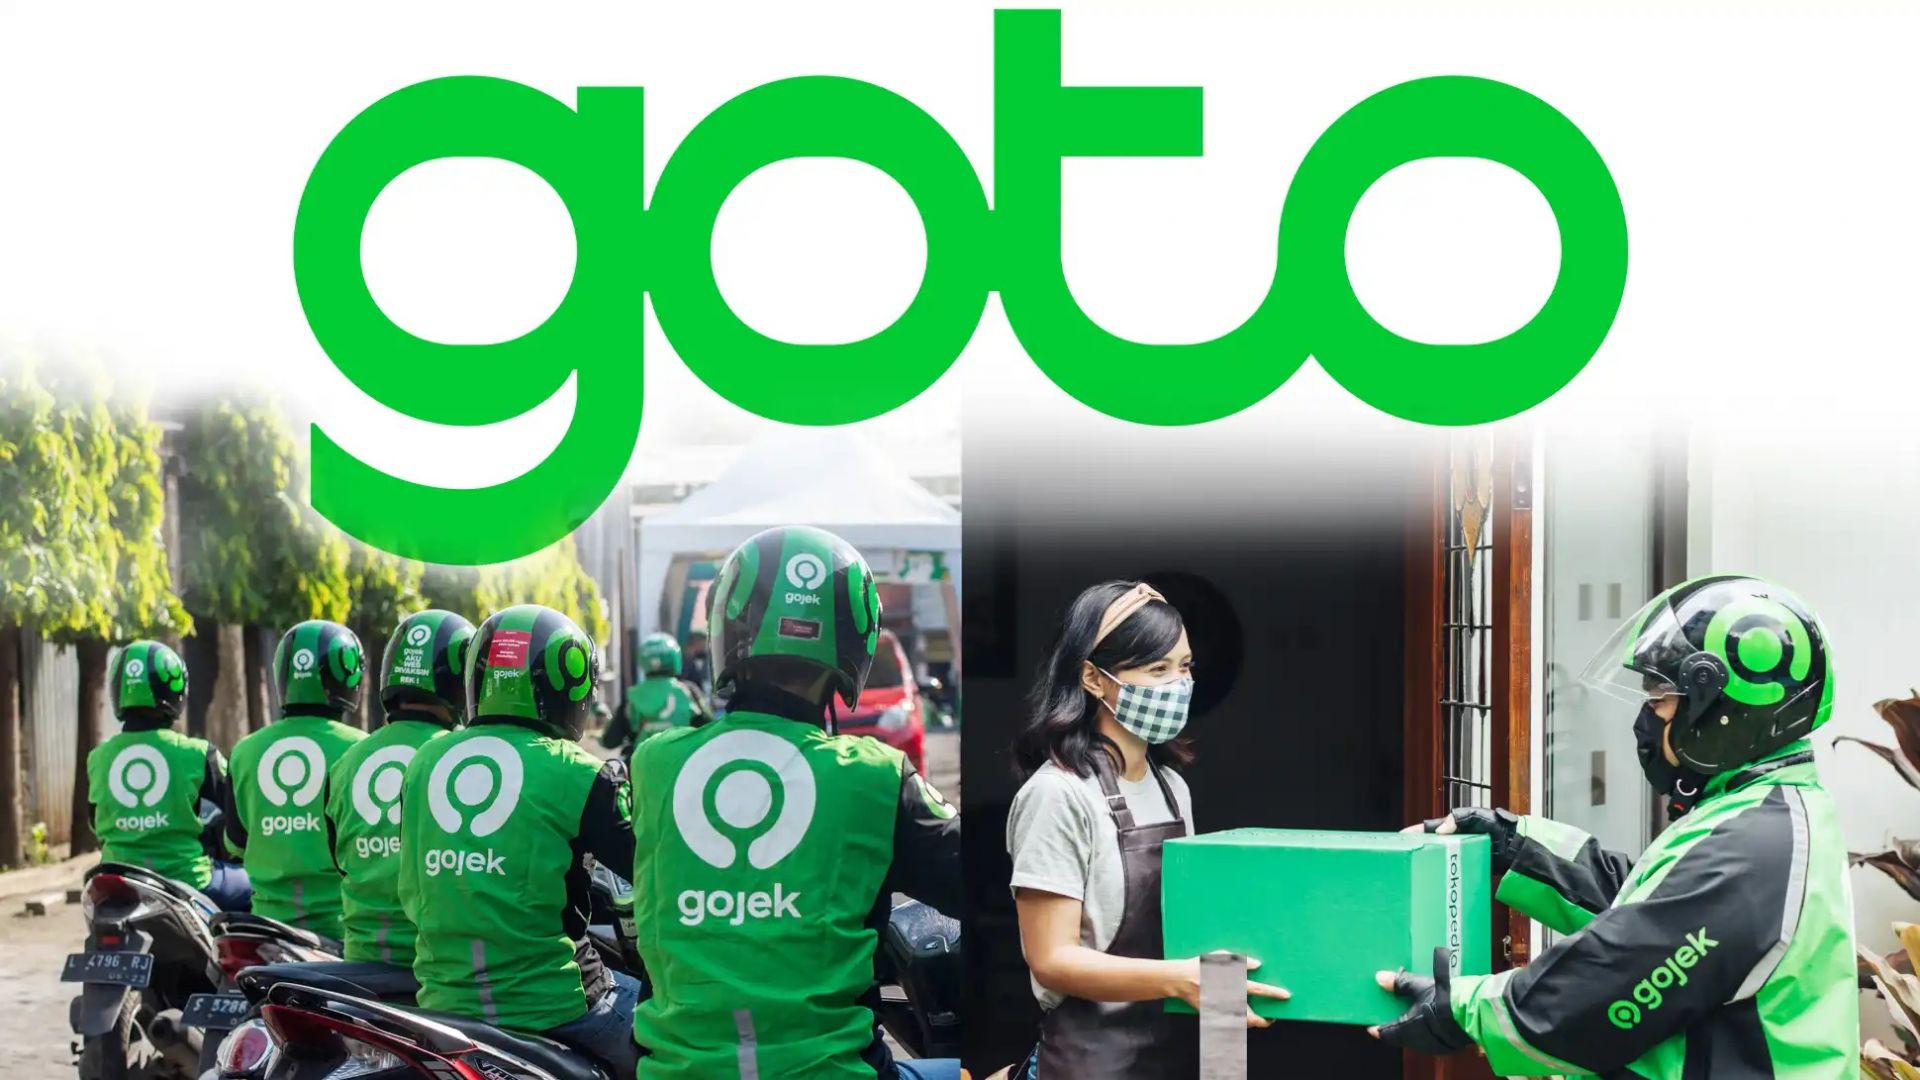 GoTo đang hy vọng rằng bằng cách niêm yết tại Indonesia, cổ phiếu của họ có thể thoát khỏi sự dè dặt đã kéo mất giá trị so với các nhà cung cấp siêu ứng dụng mới được liệt kê khác. (Nguồn ảnh của GoTo Group và AFP / Jiji)